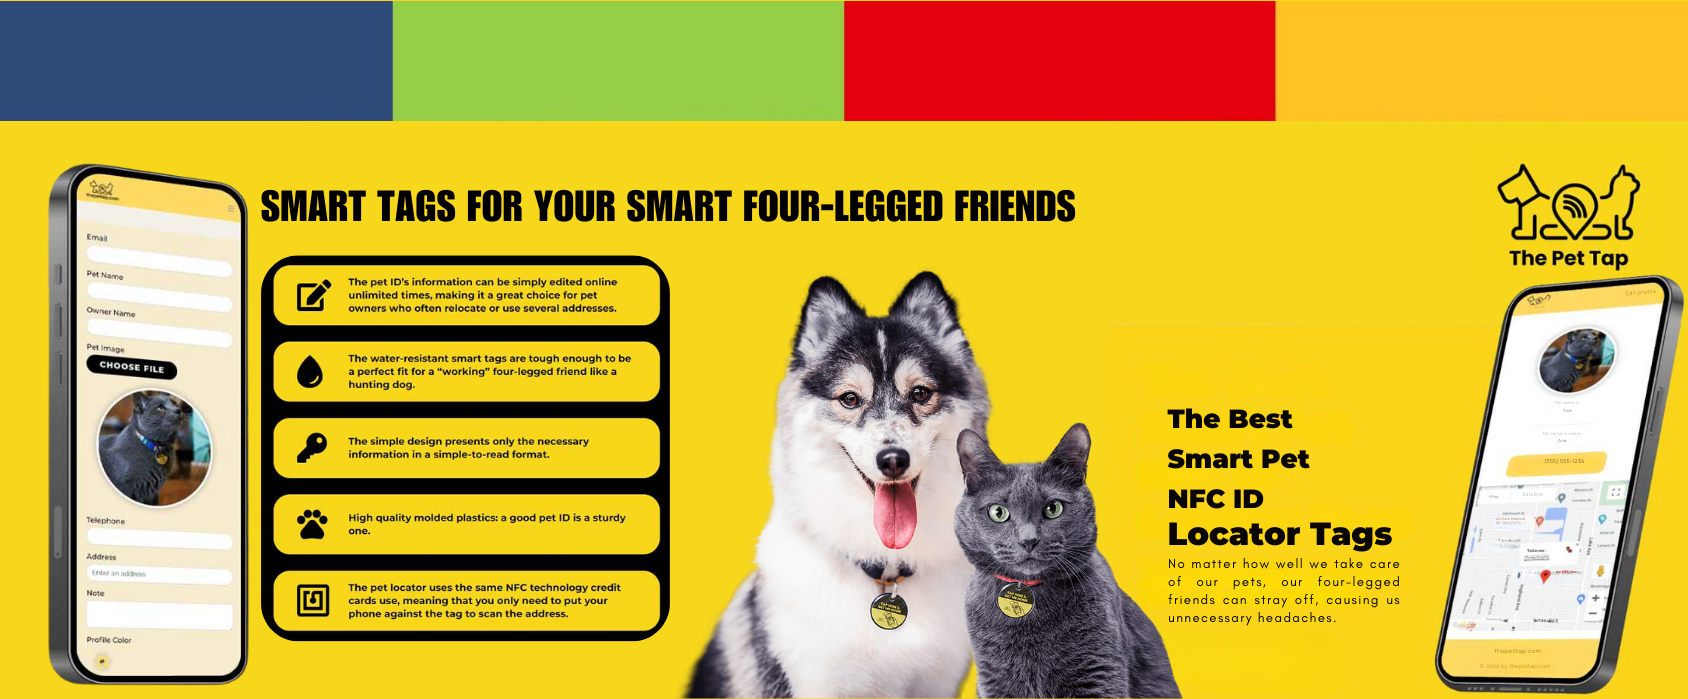 The Pet Tap Smart Pet NFC ID Locator Tag